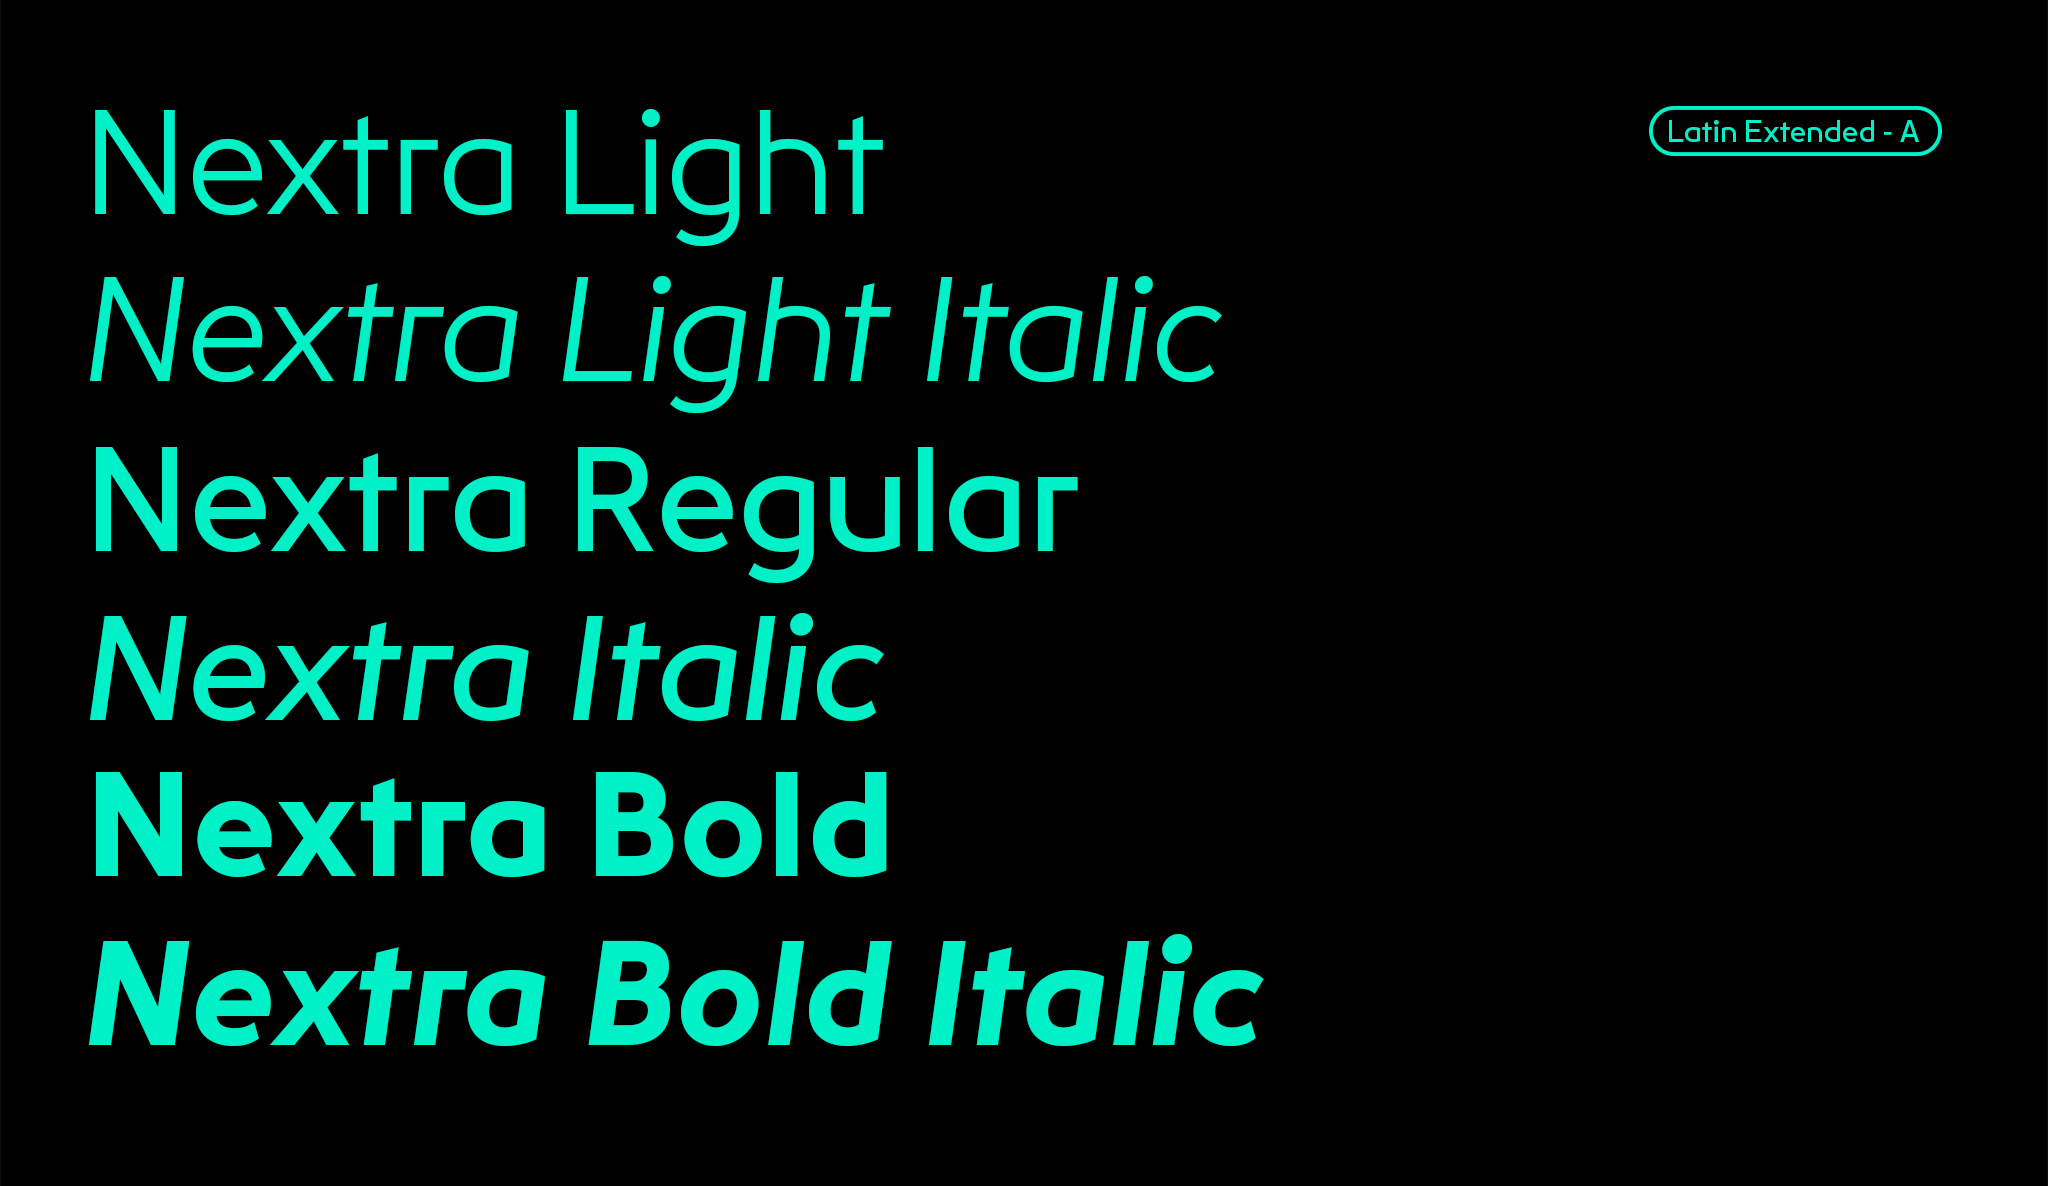 Übersicht der Schriftschnitte von Light bis Bold-Italic / Overview of font styles from Light to Bold-Italic